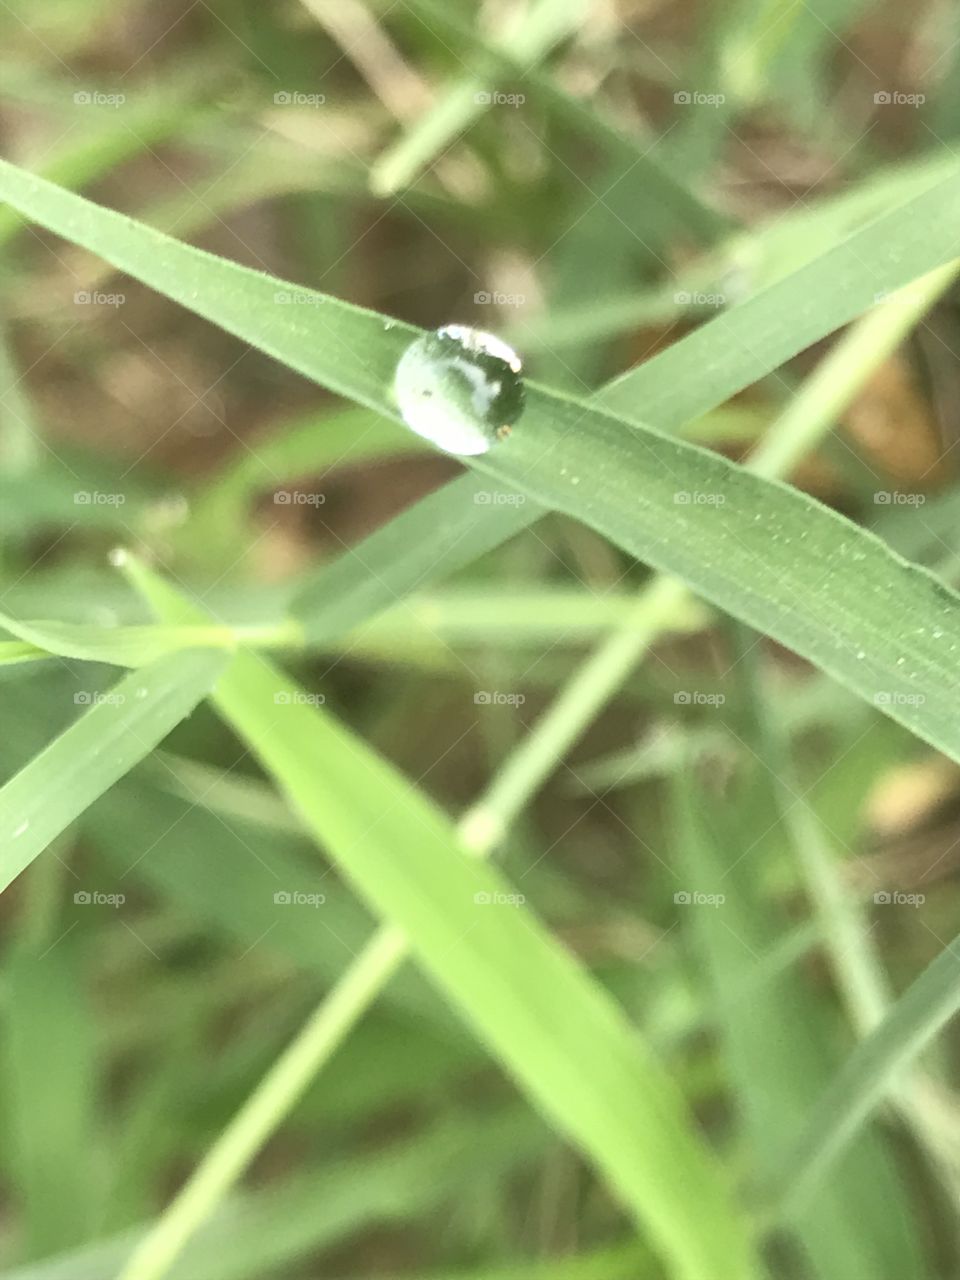 Dew drop grass reflection